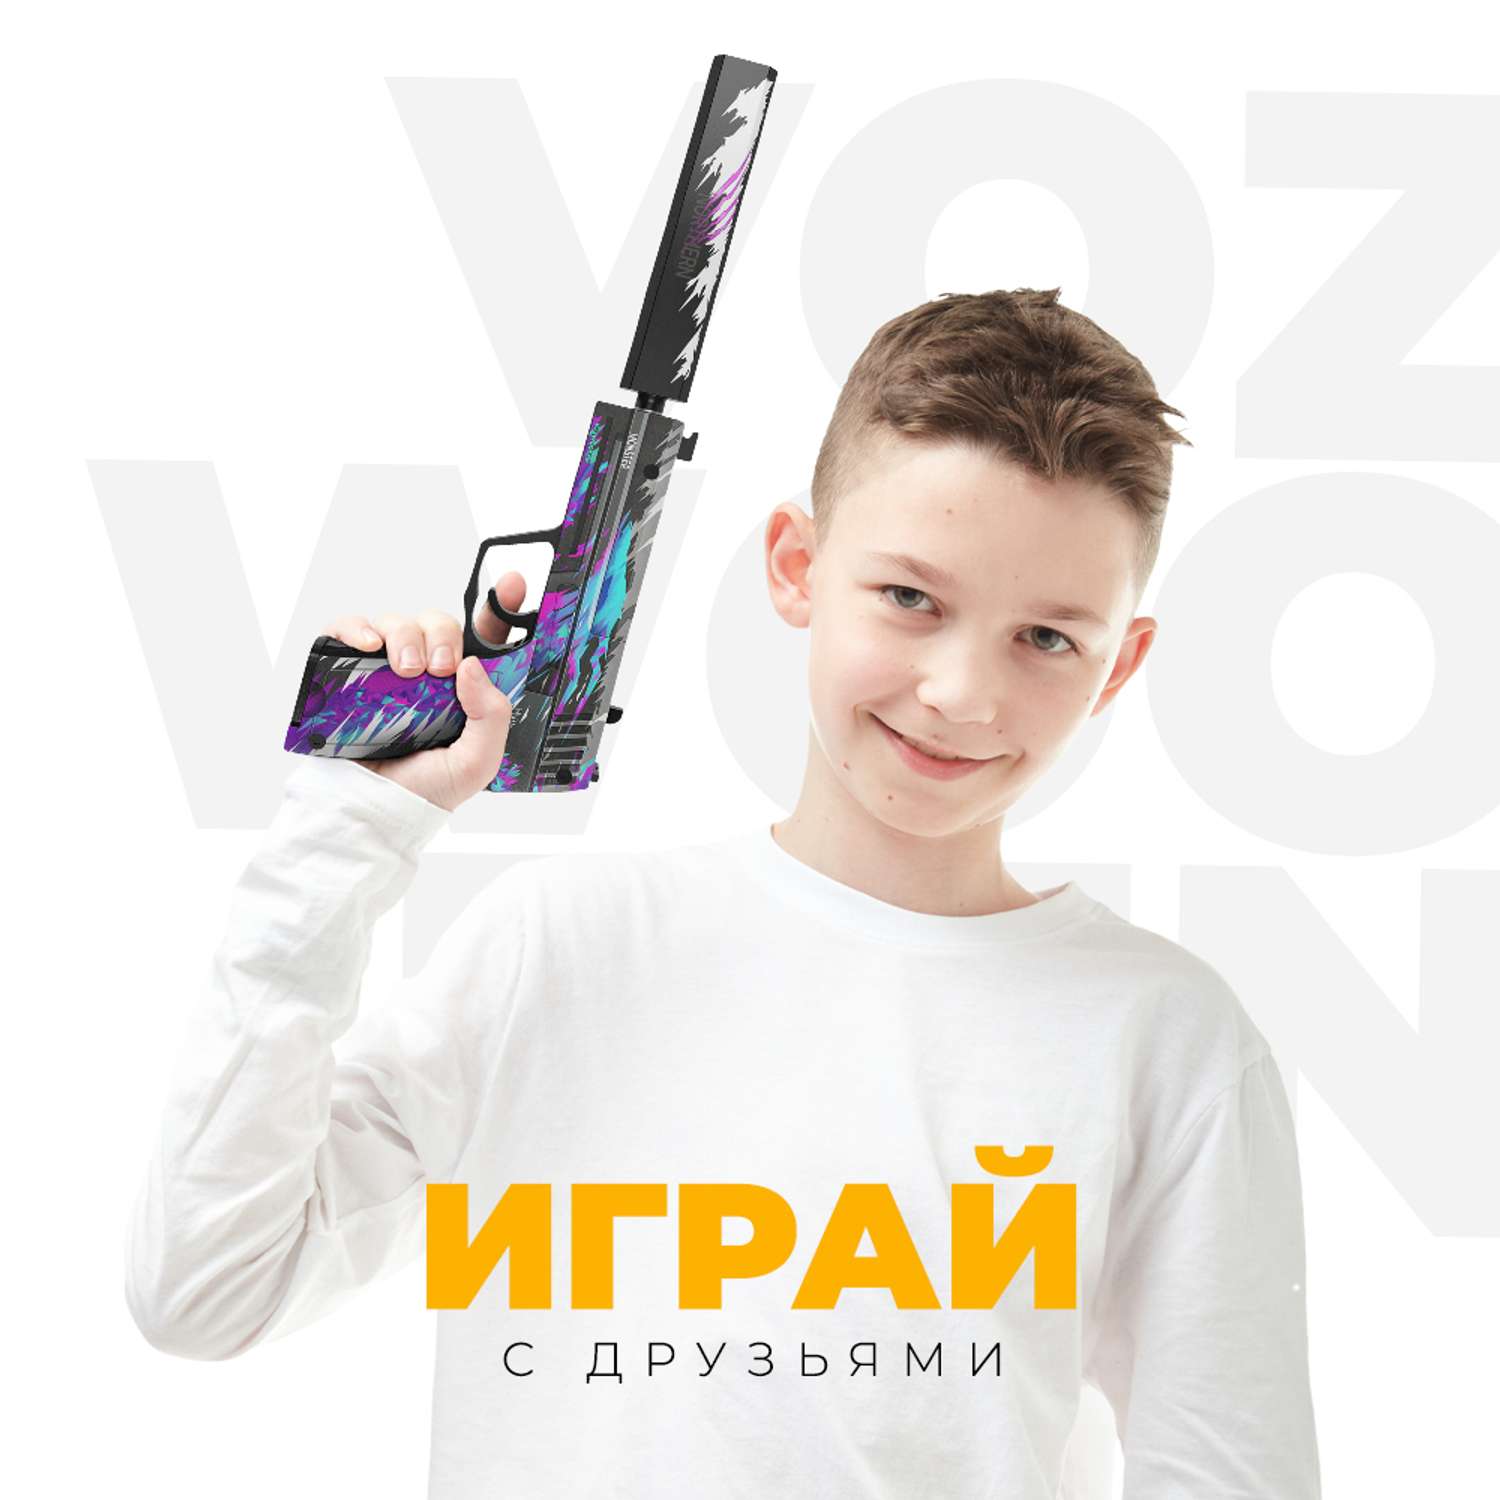 Игрушечный пистолет VozWooden USP Генезис Стандофф резинкострел деревянный - фото 6